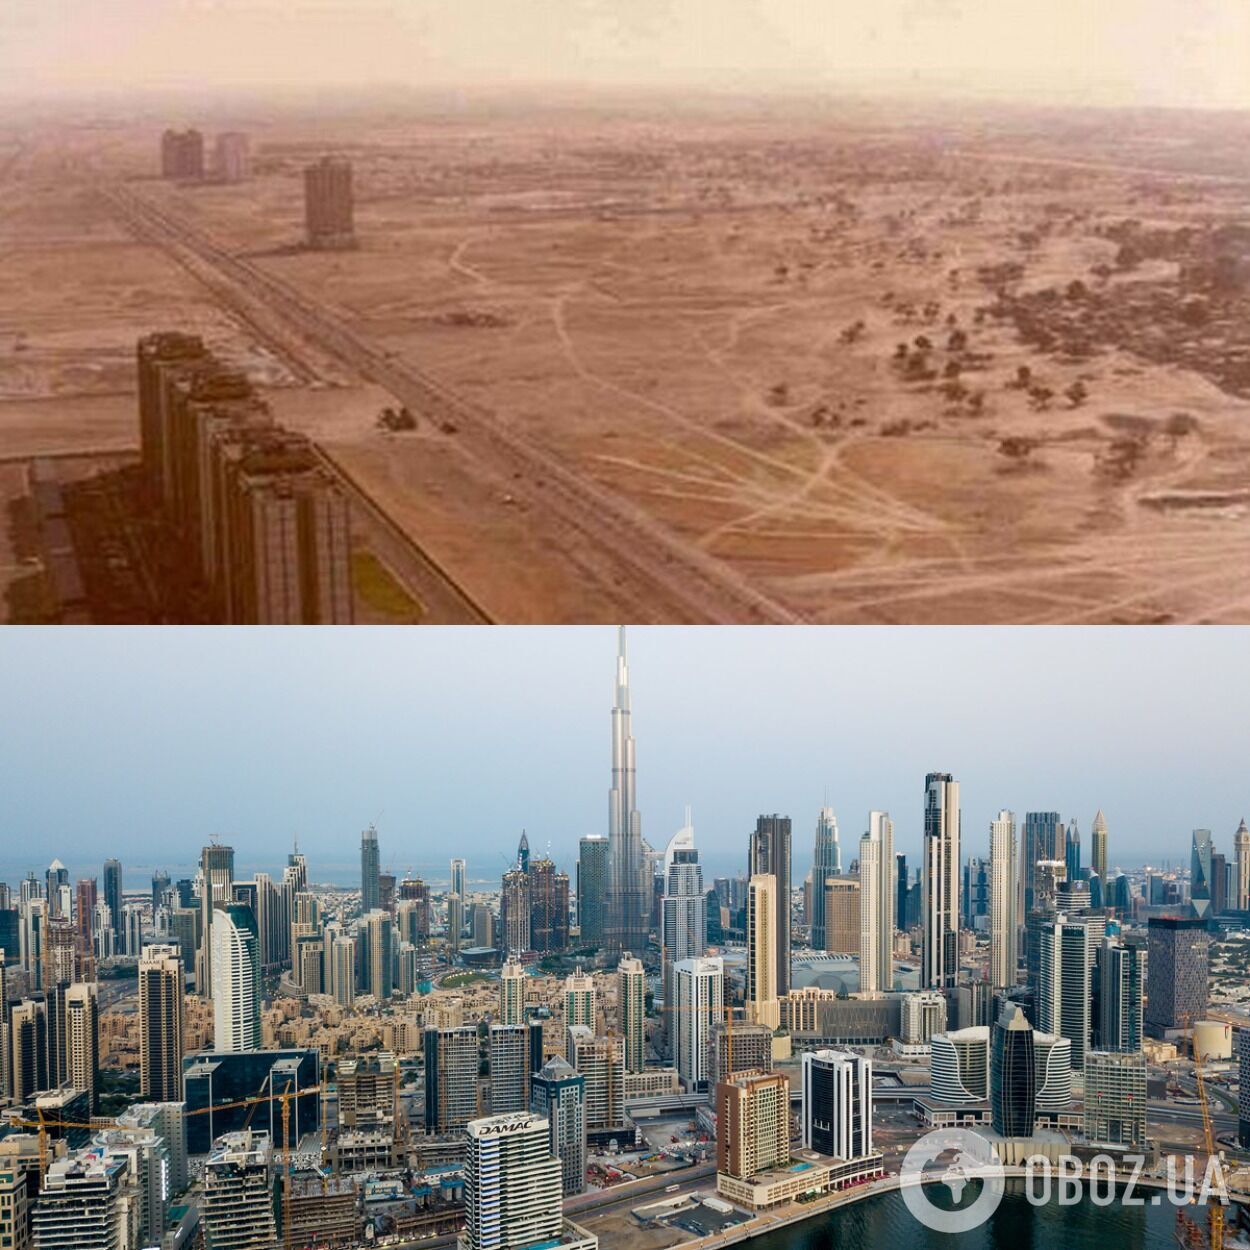 Дубай в 1991 году и сейчас